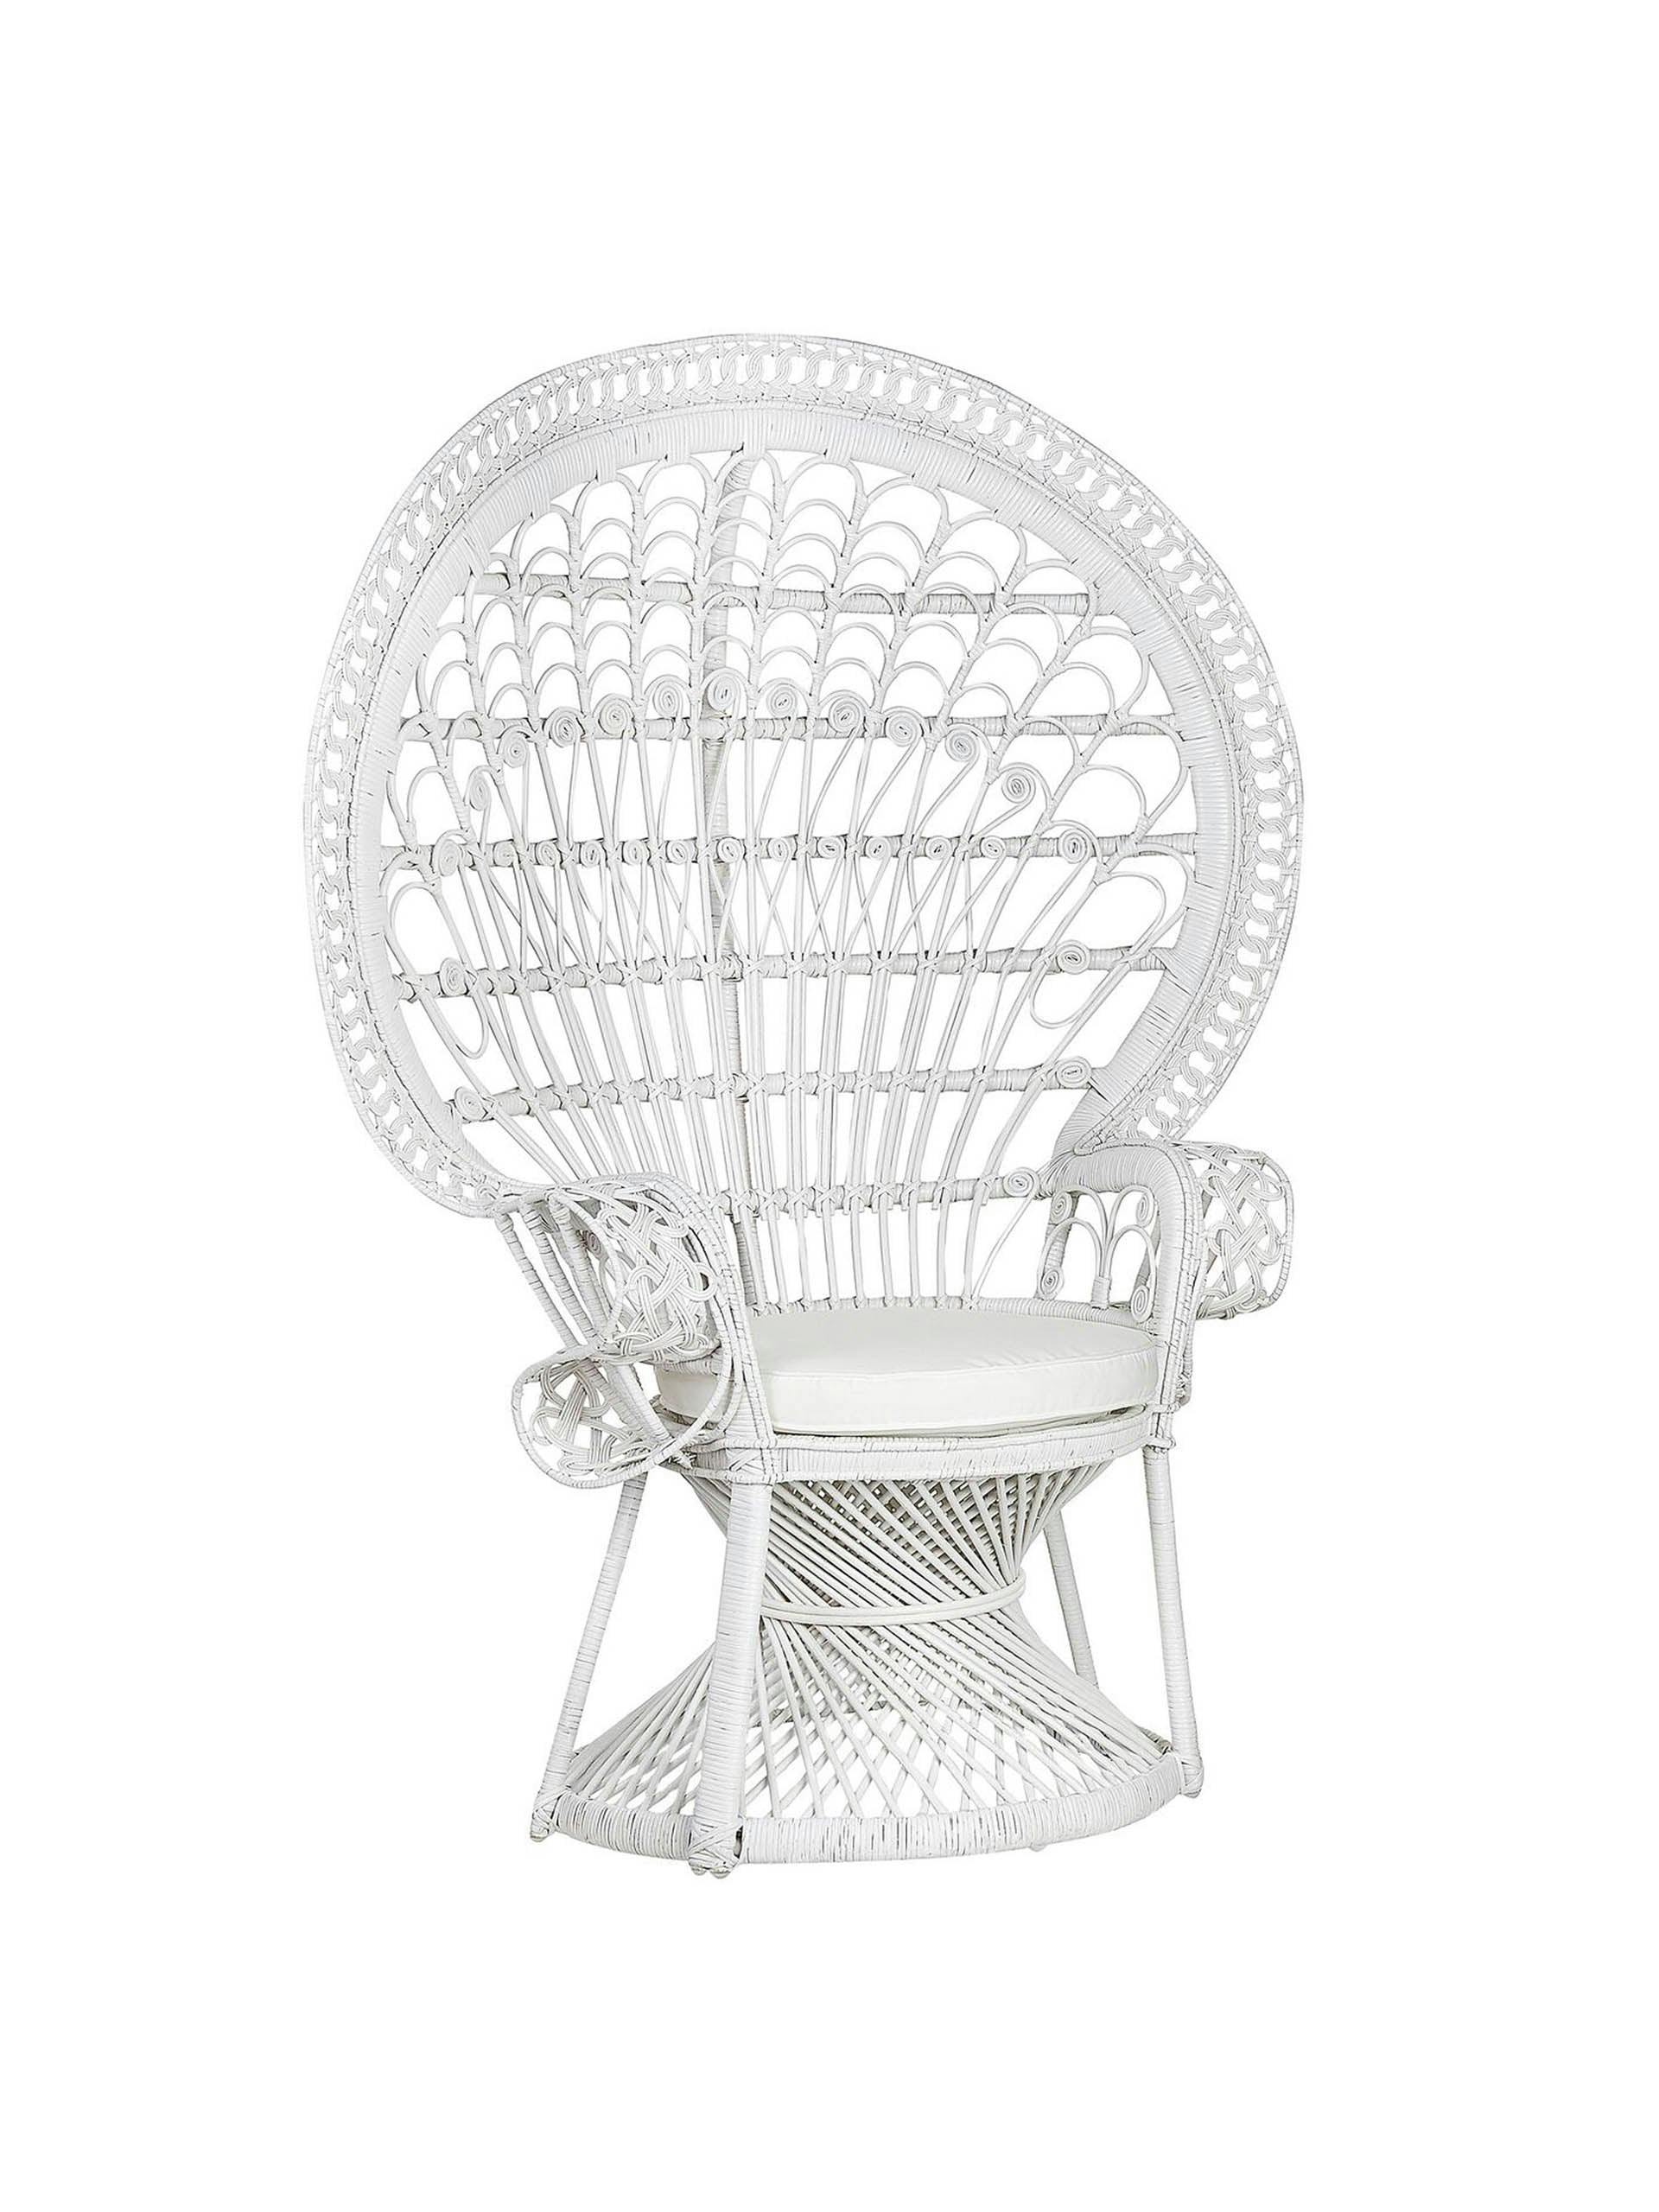 White rattan peacock chair